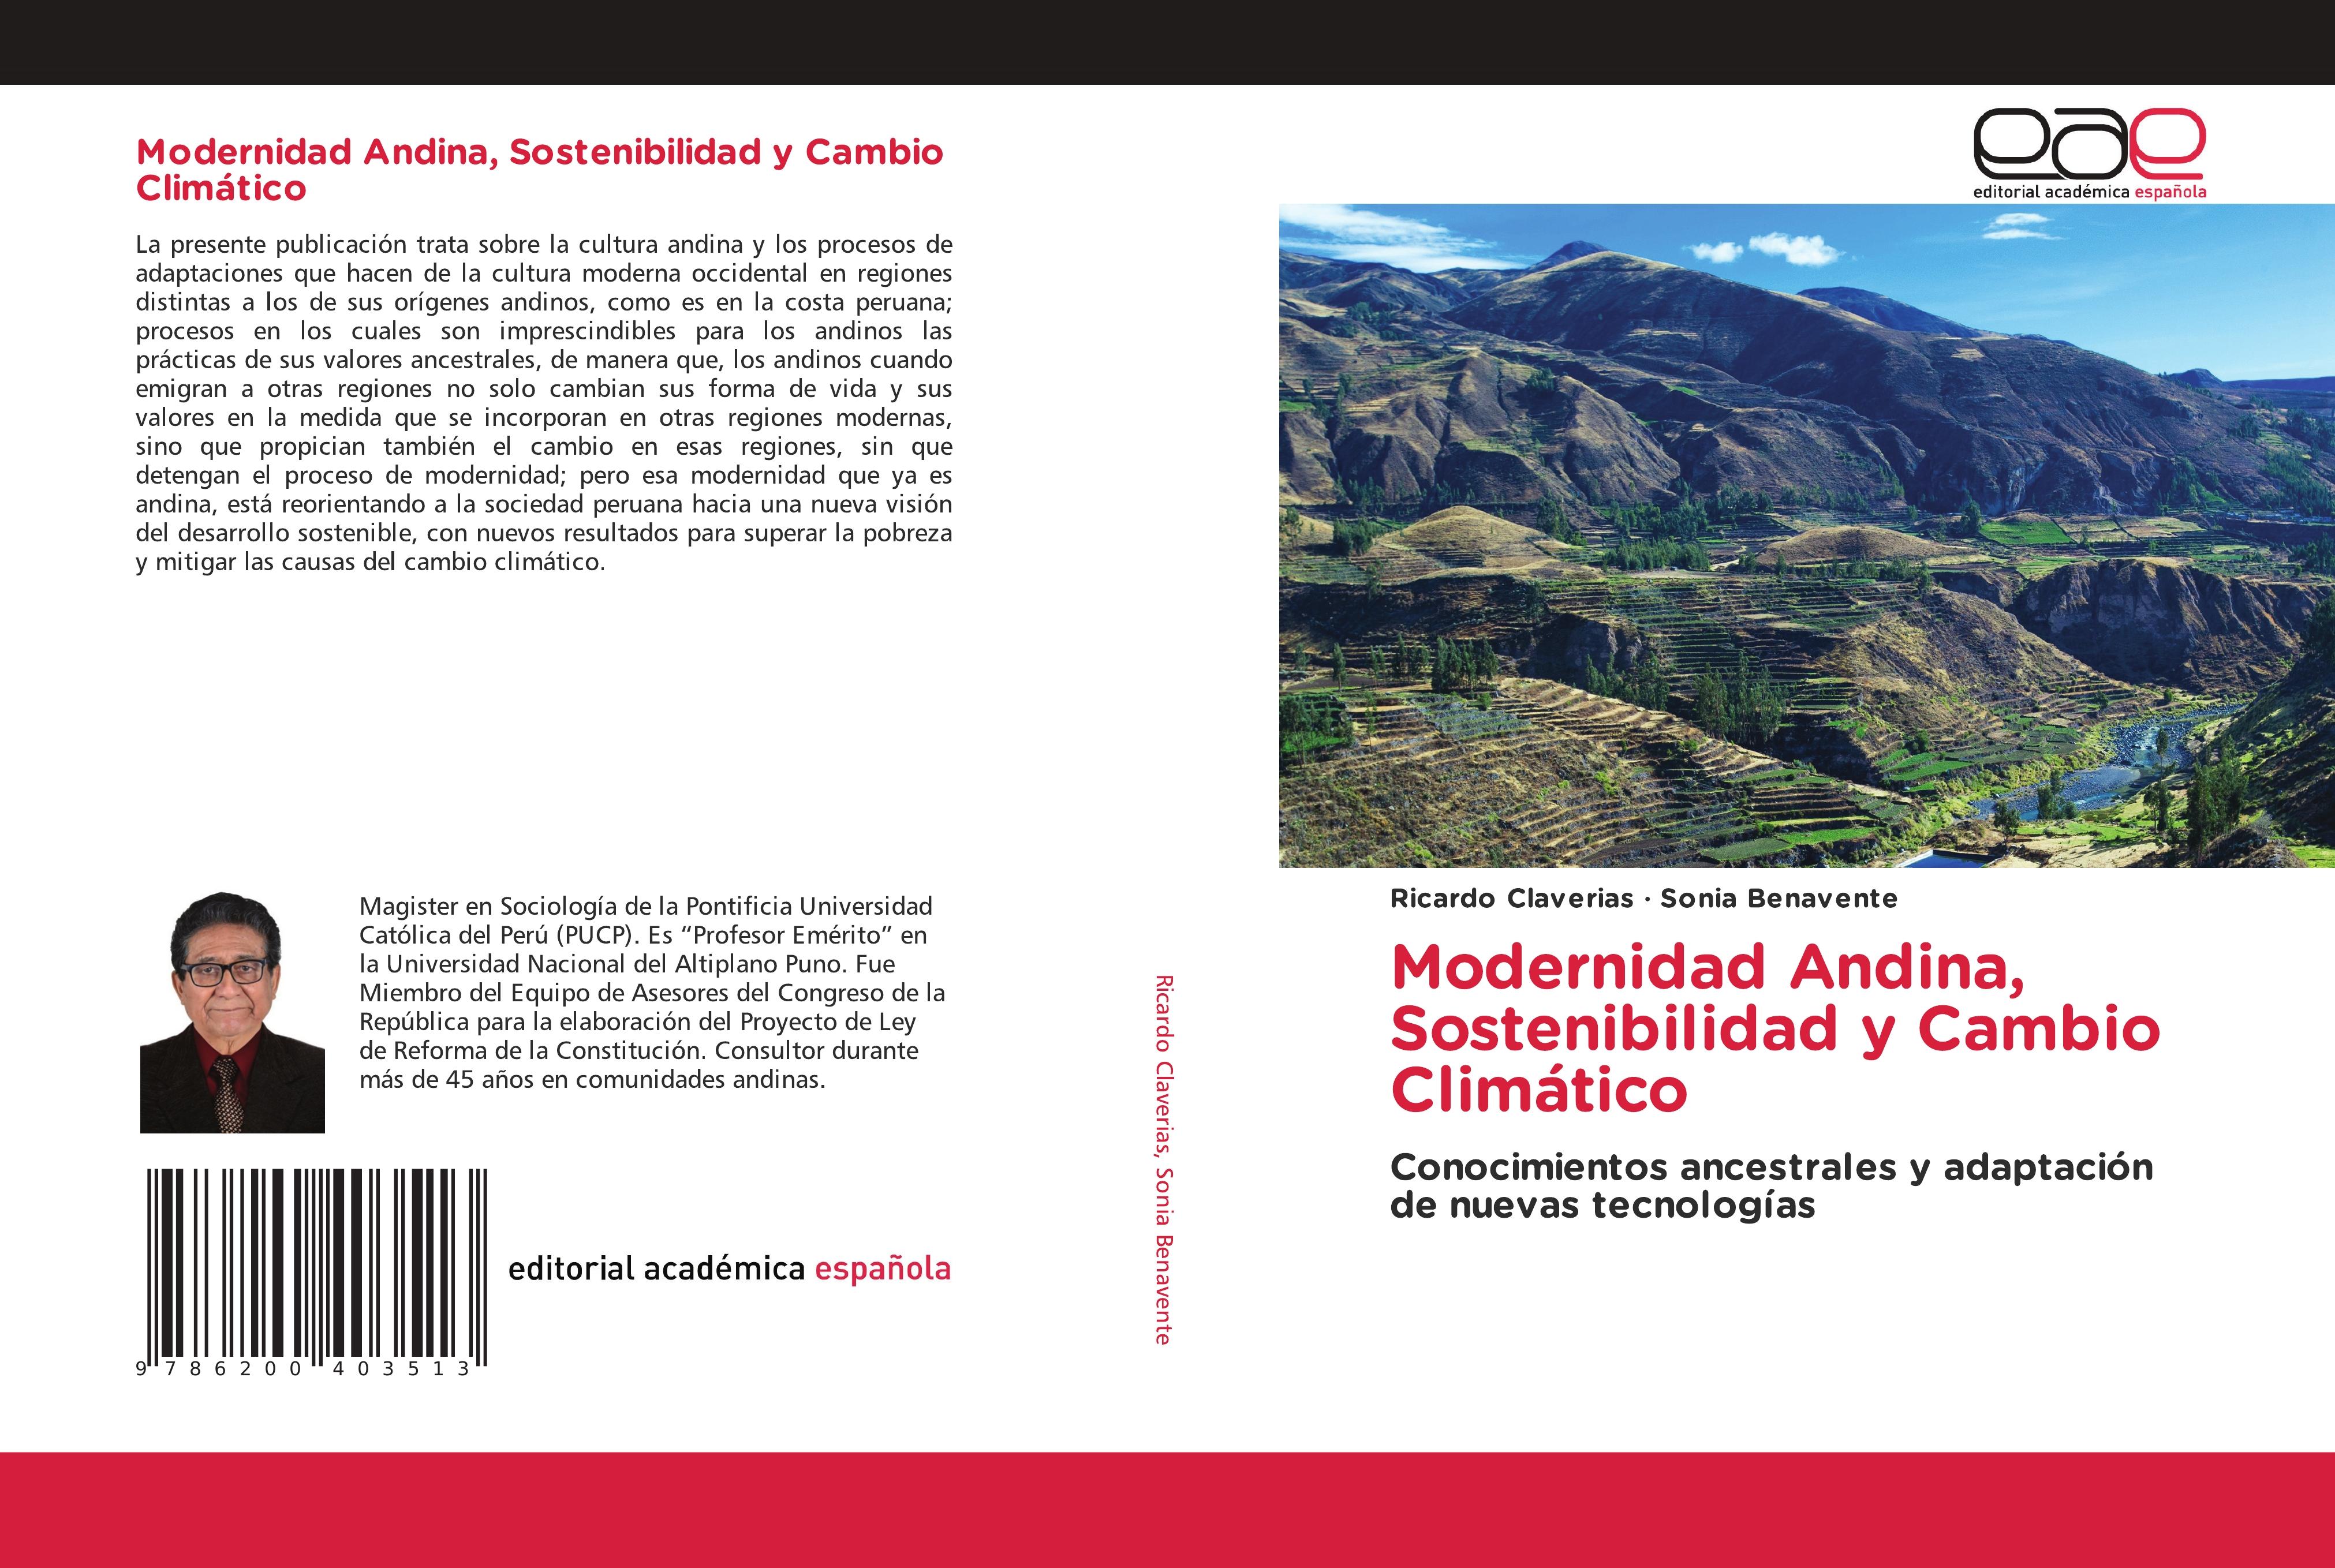 Modernidad Andina, Sostenibilidad y Cambio Climático - Ricardo Claverias Sonia Benavente